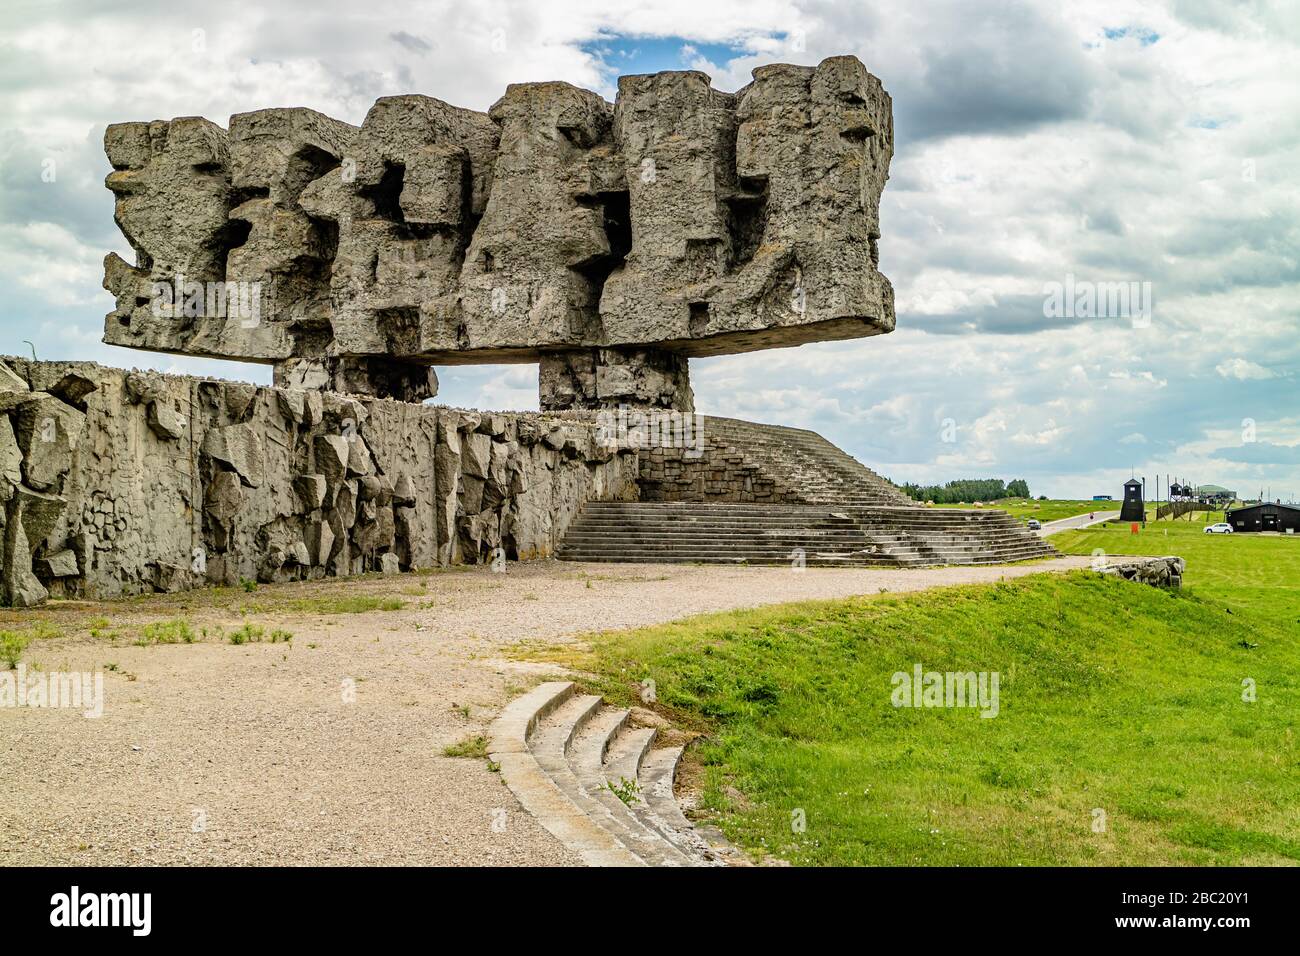 Denkmal für die 6 Millionen Juden, die im 2. Weltkrieg ermordet wurden. KZ Majdanek, Lublin, Polen. Juni 2017. Stockfoto